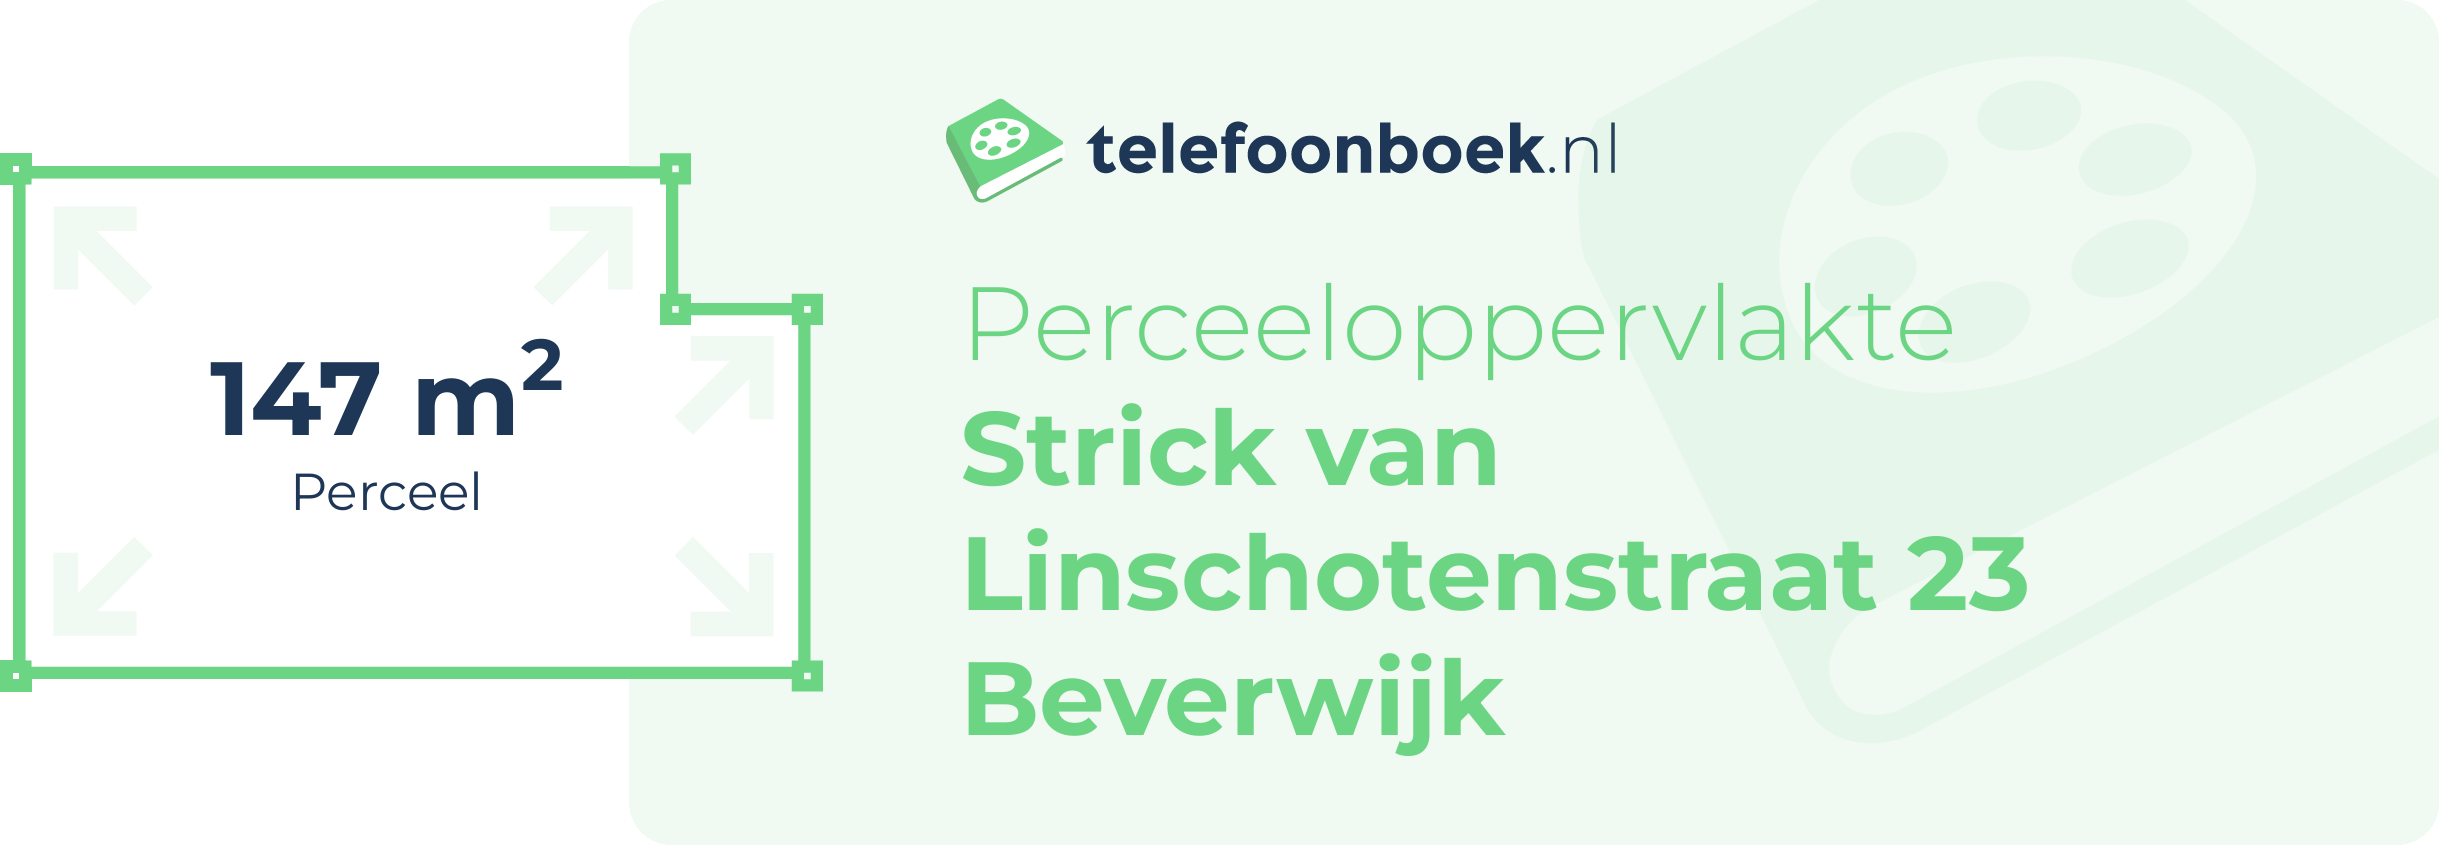 Perceeloppervlakte Strick Van Linschotenstraat 23 Beverwijk